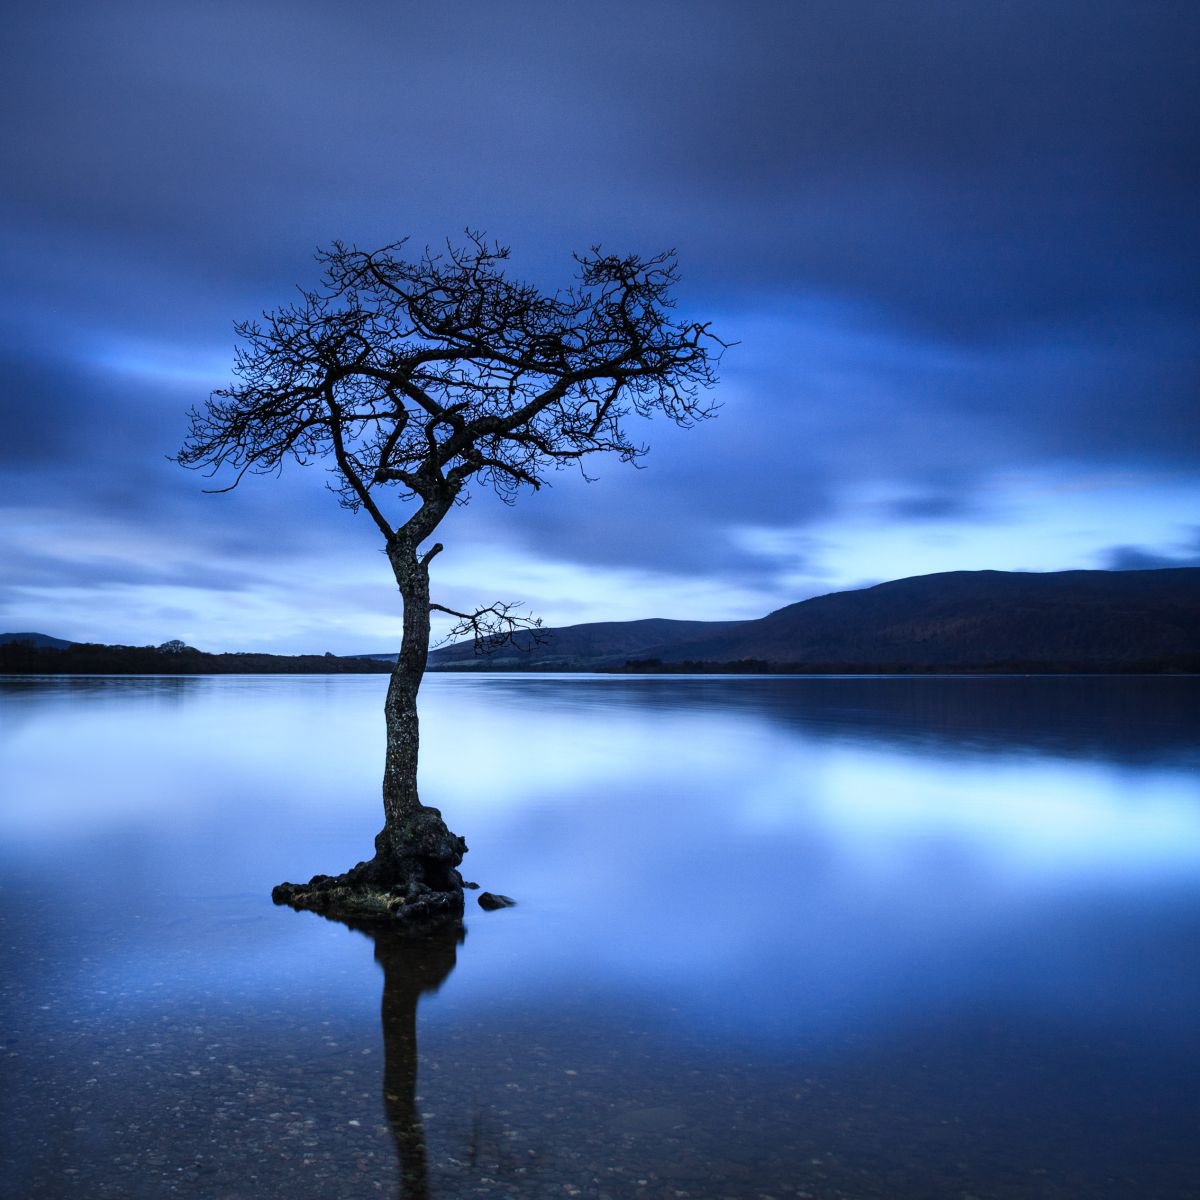 Day is Blue - Peaceful Tree in Blue Water, Loch Lomond, Scotland by Lynne Douglas